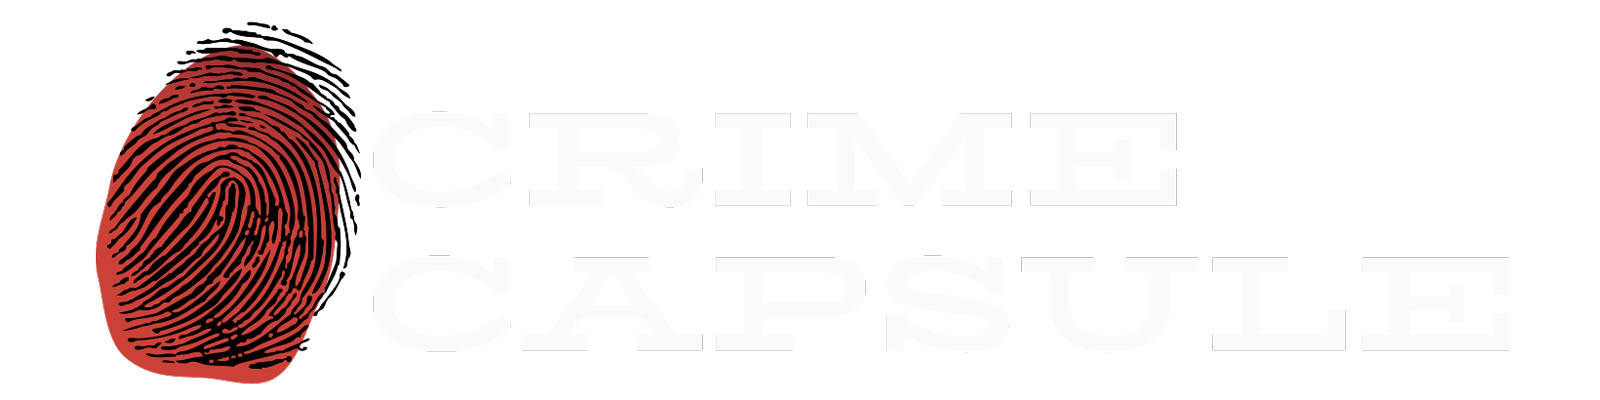 Crime Capsule